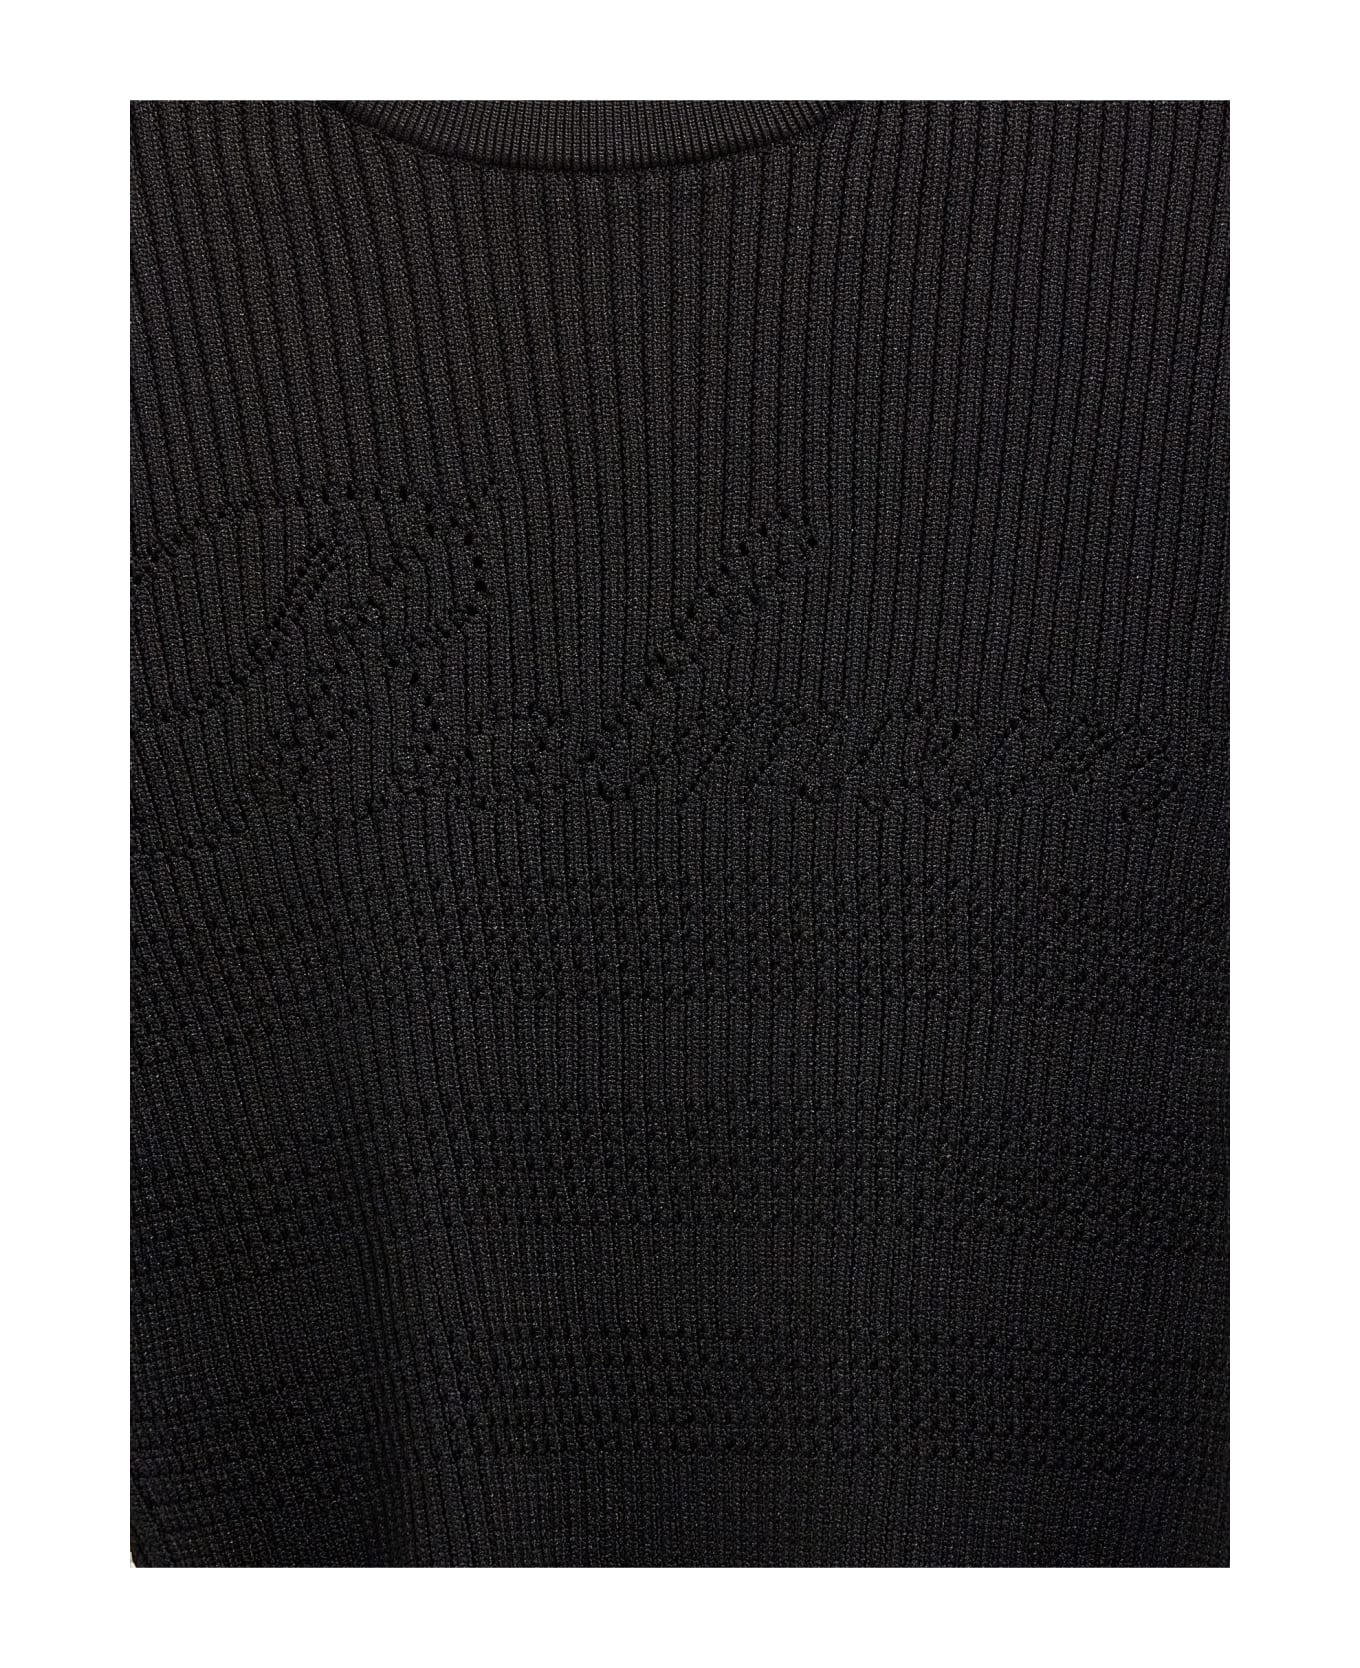 Balmain Signature Knit Jumper - BLACK